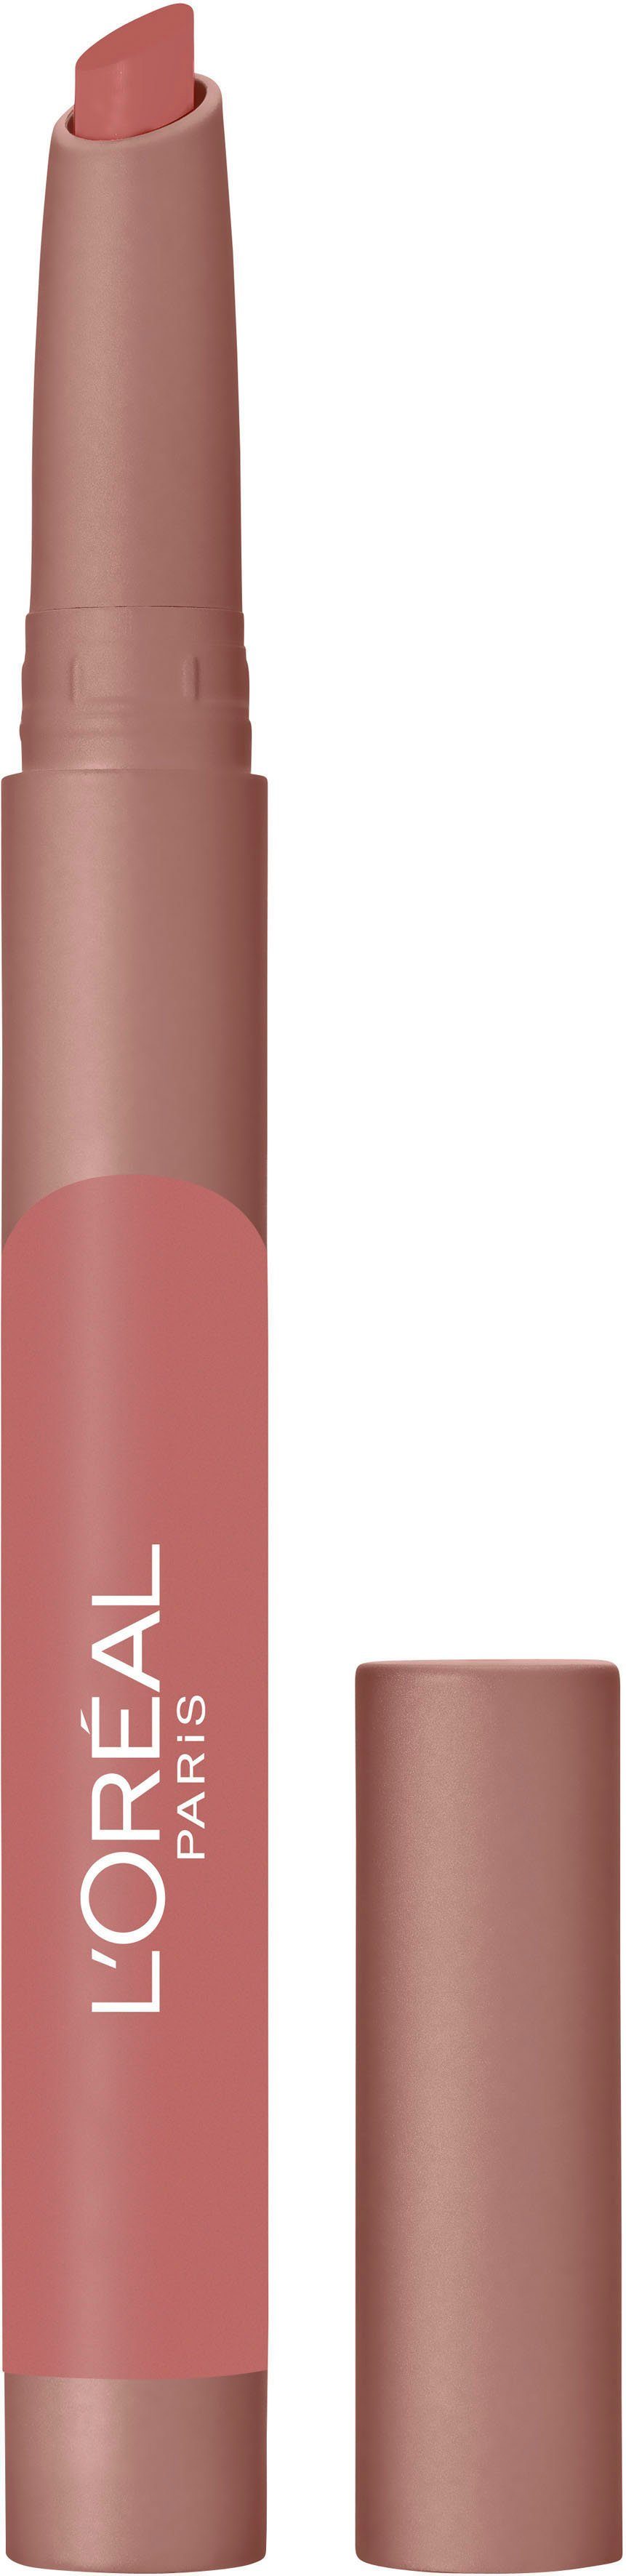 Crayon PARIS PROFESSIONNEL Blondie Caramel Lip L'ORÉAL L'ORÉAL 102 Lippenstift PARIS Matte Infaillible